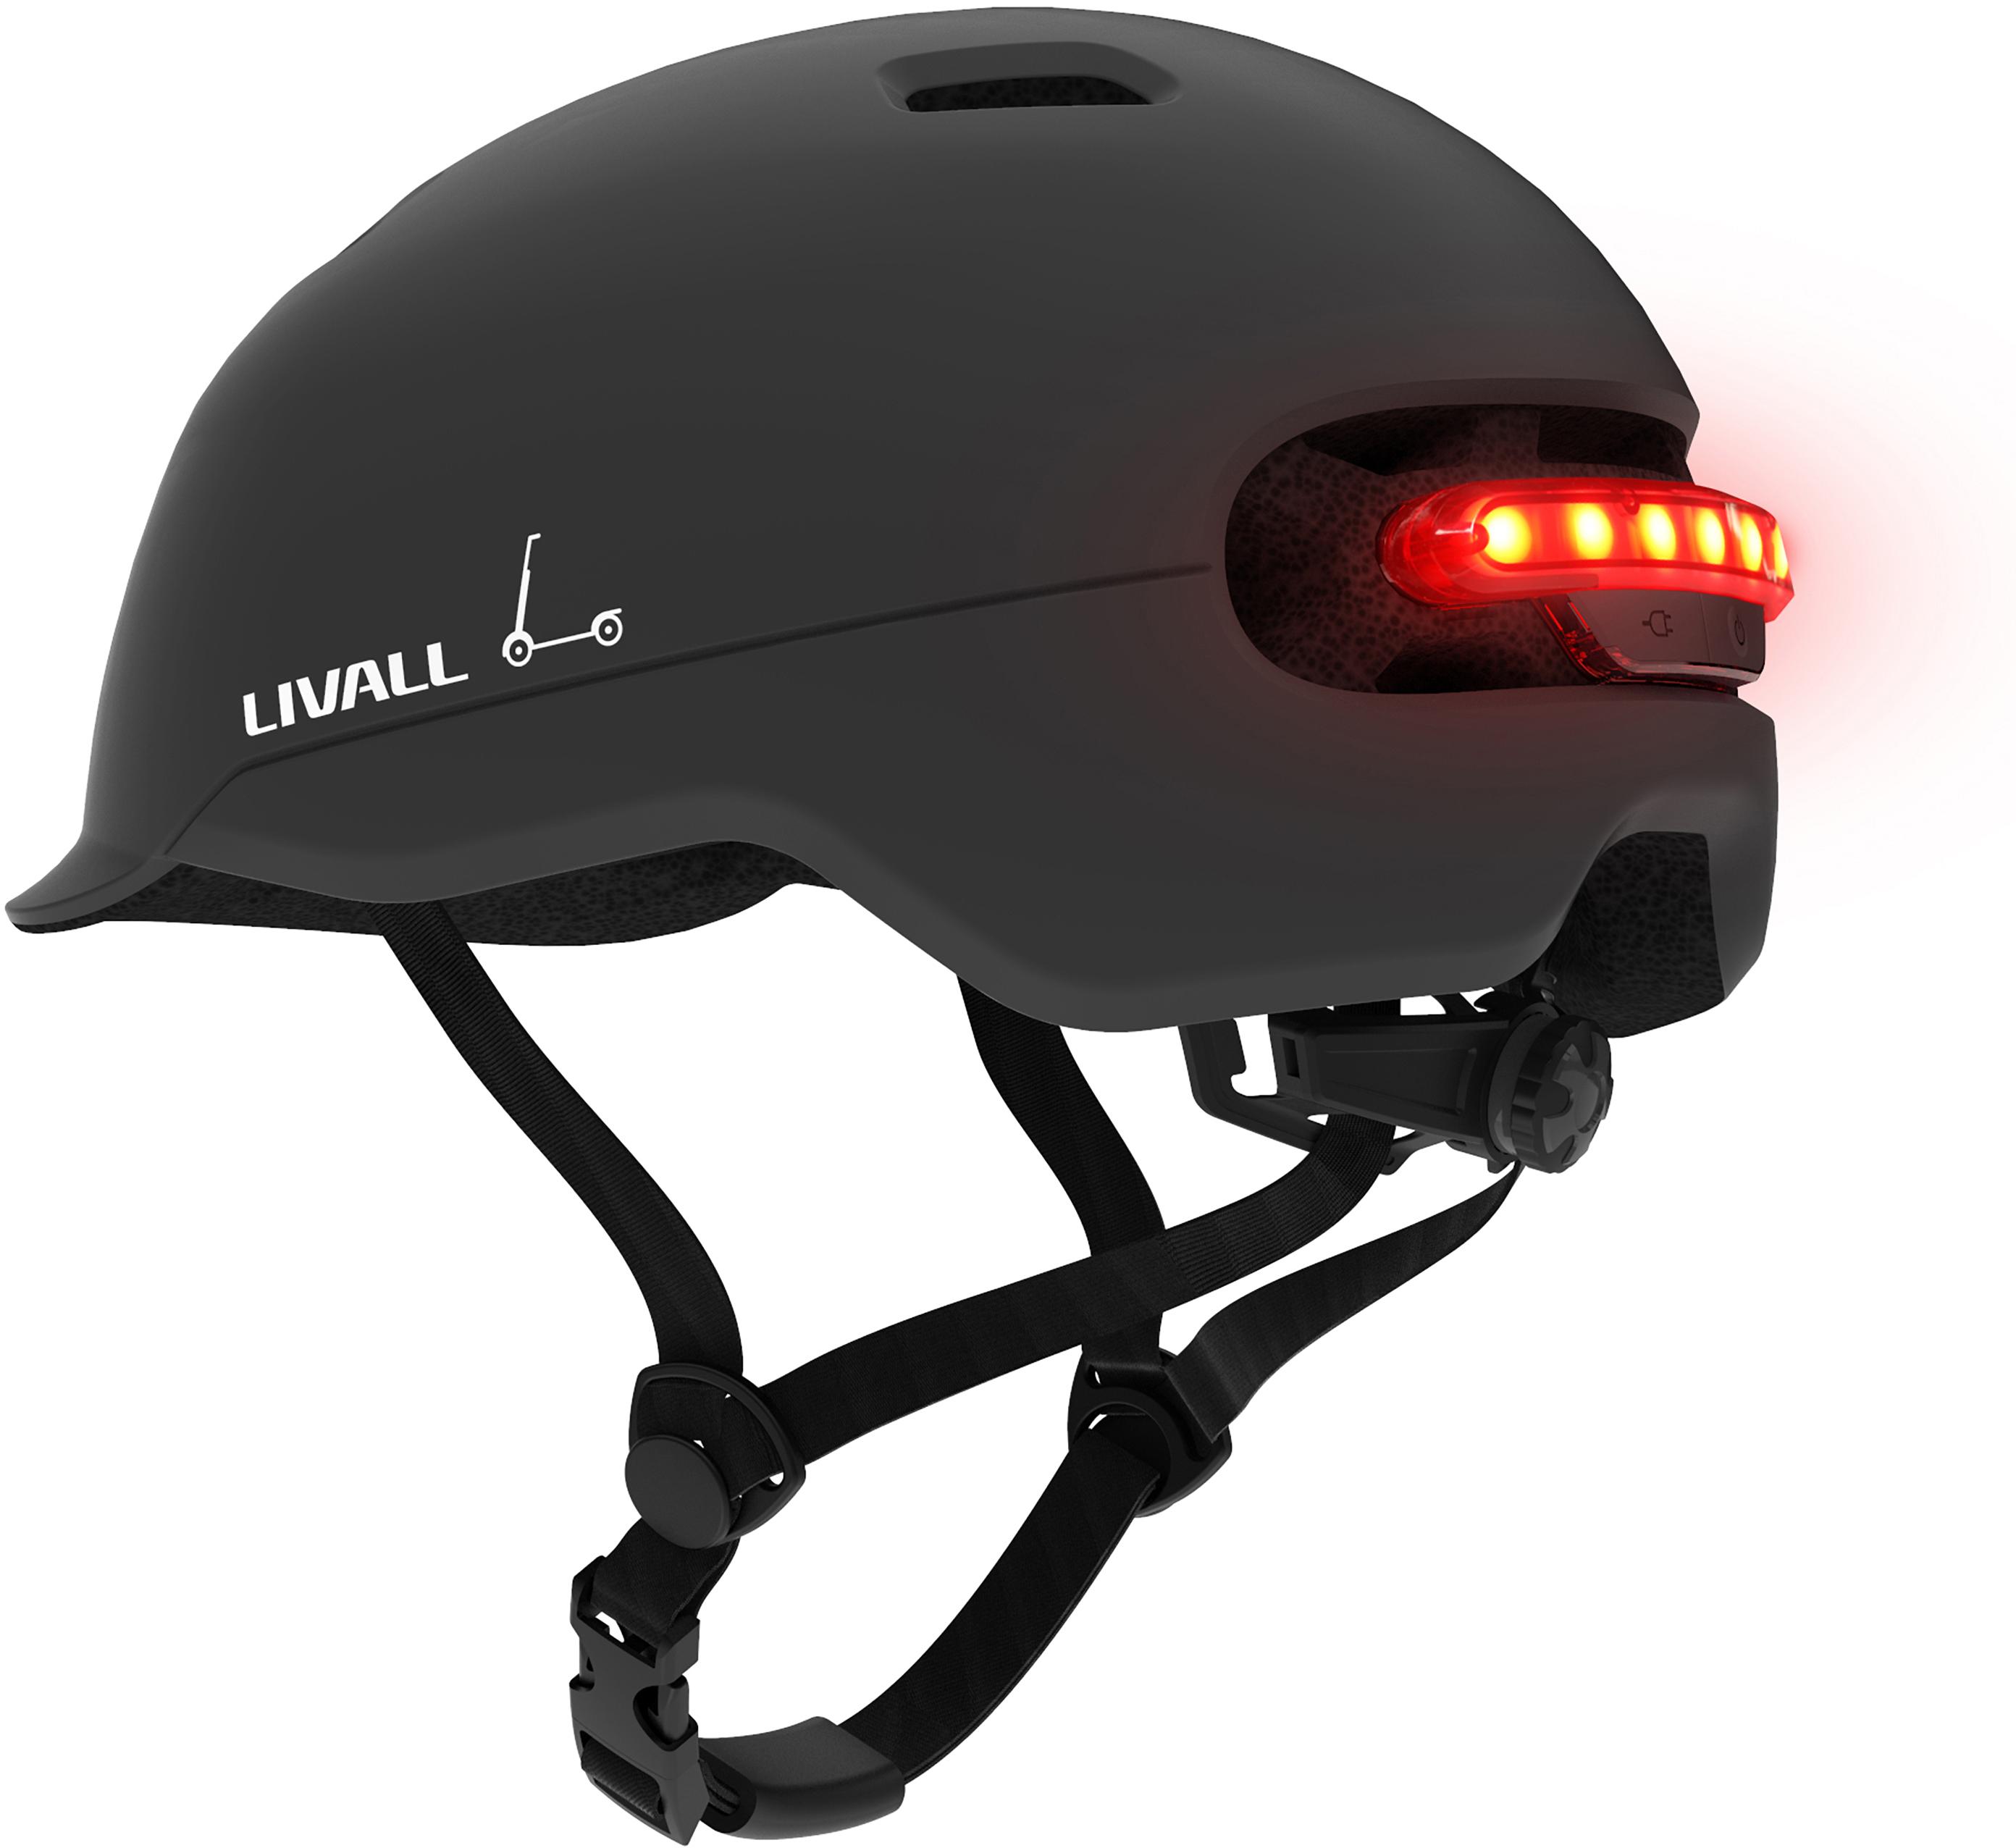 Livall C20 Smart Leisure Helmet Midnight Black Large 57-61Cm